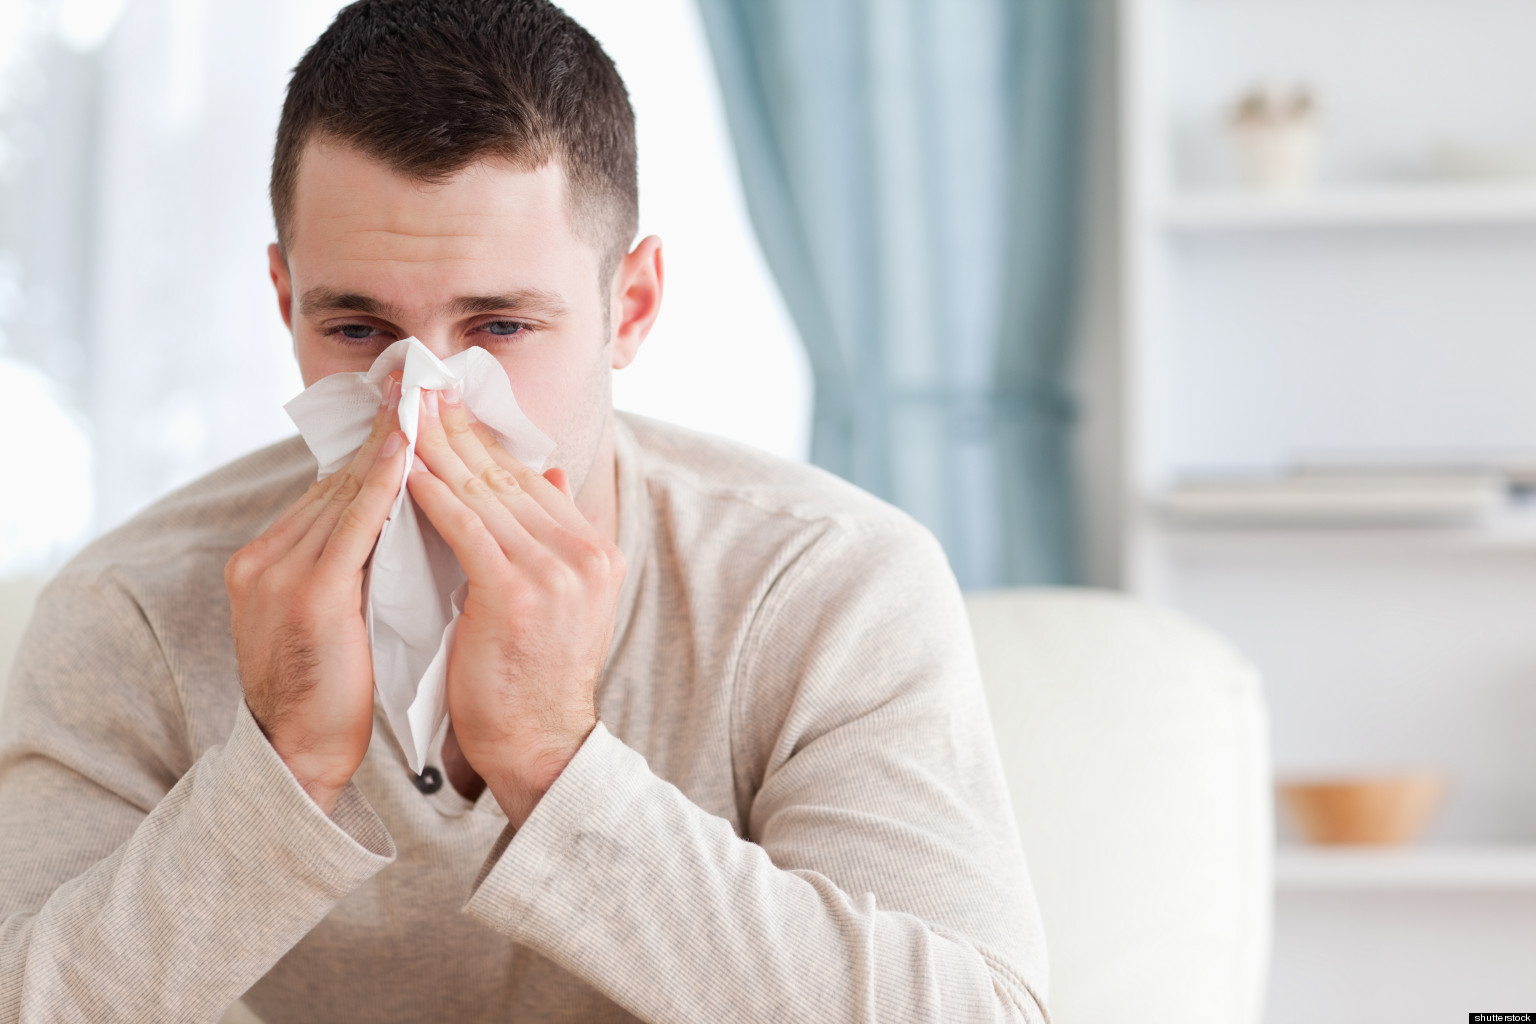 مجموعه علاجات الايورفيدا لمحاربة البرد أو الانفلونزا